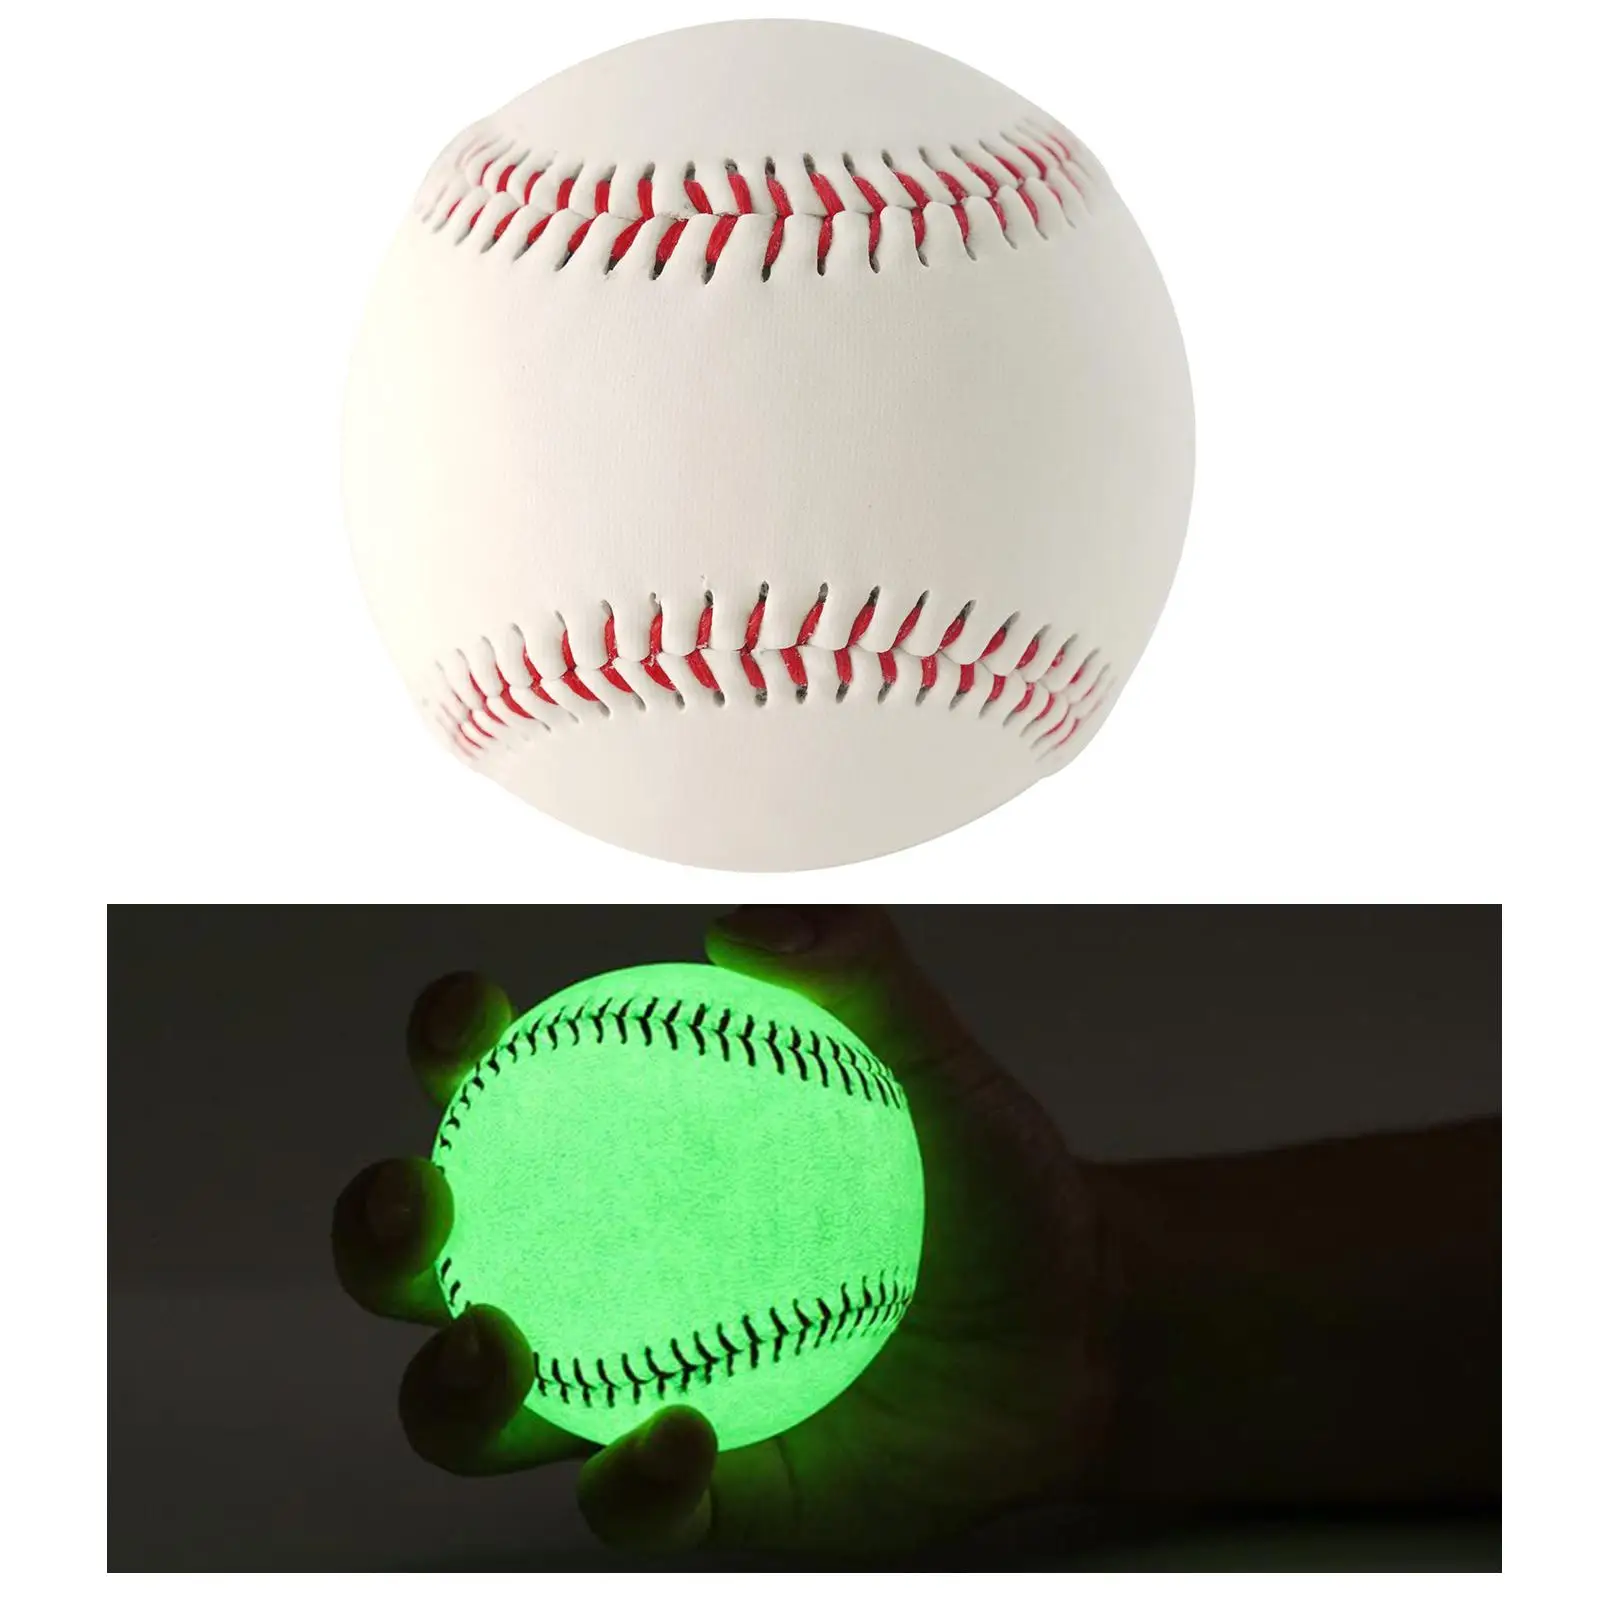 

Светильник up оборудование для бейсбола наружный диаметр 70 мм тренировочный Бейсбол для взрослых начинающих девушек мужчин женщин фанатов бейсбола